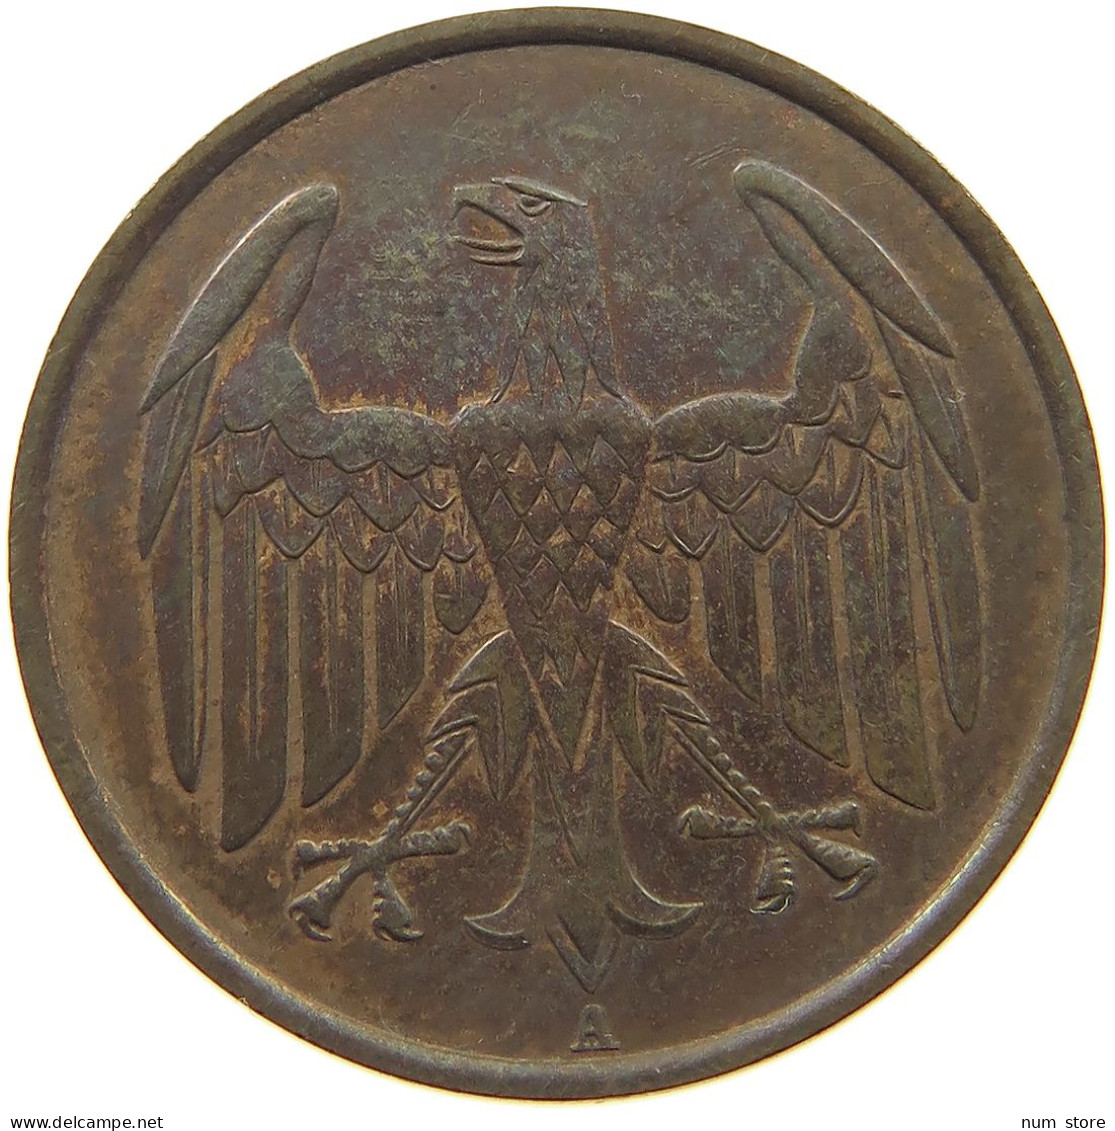 WEIMARER REPUBLIK 4 PFENNIG 1932 A  #c080 0471 - 4 Reichspfennig